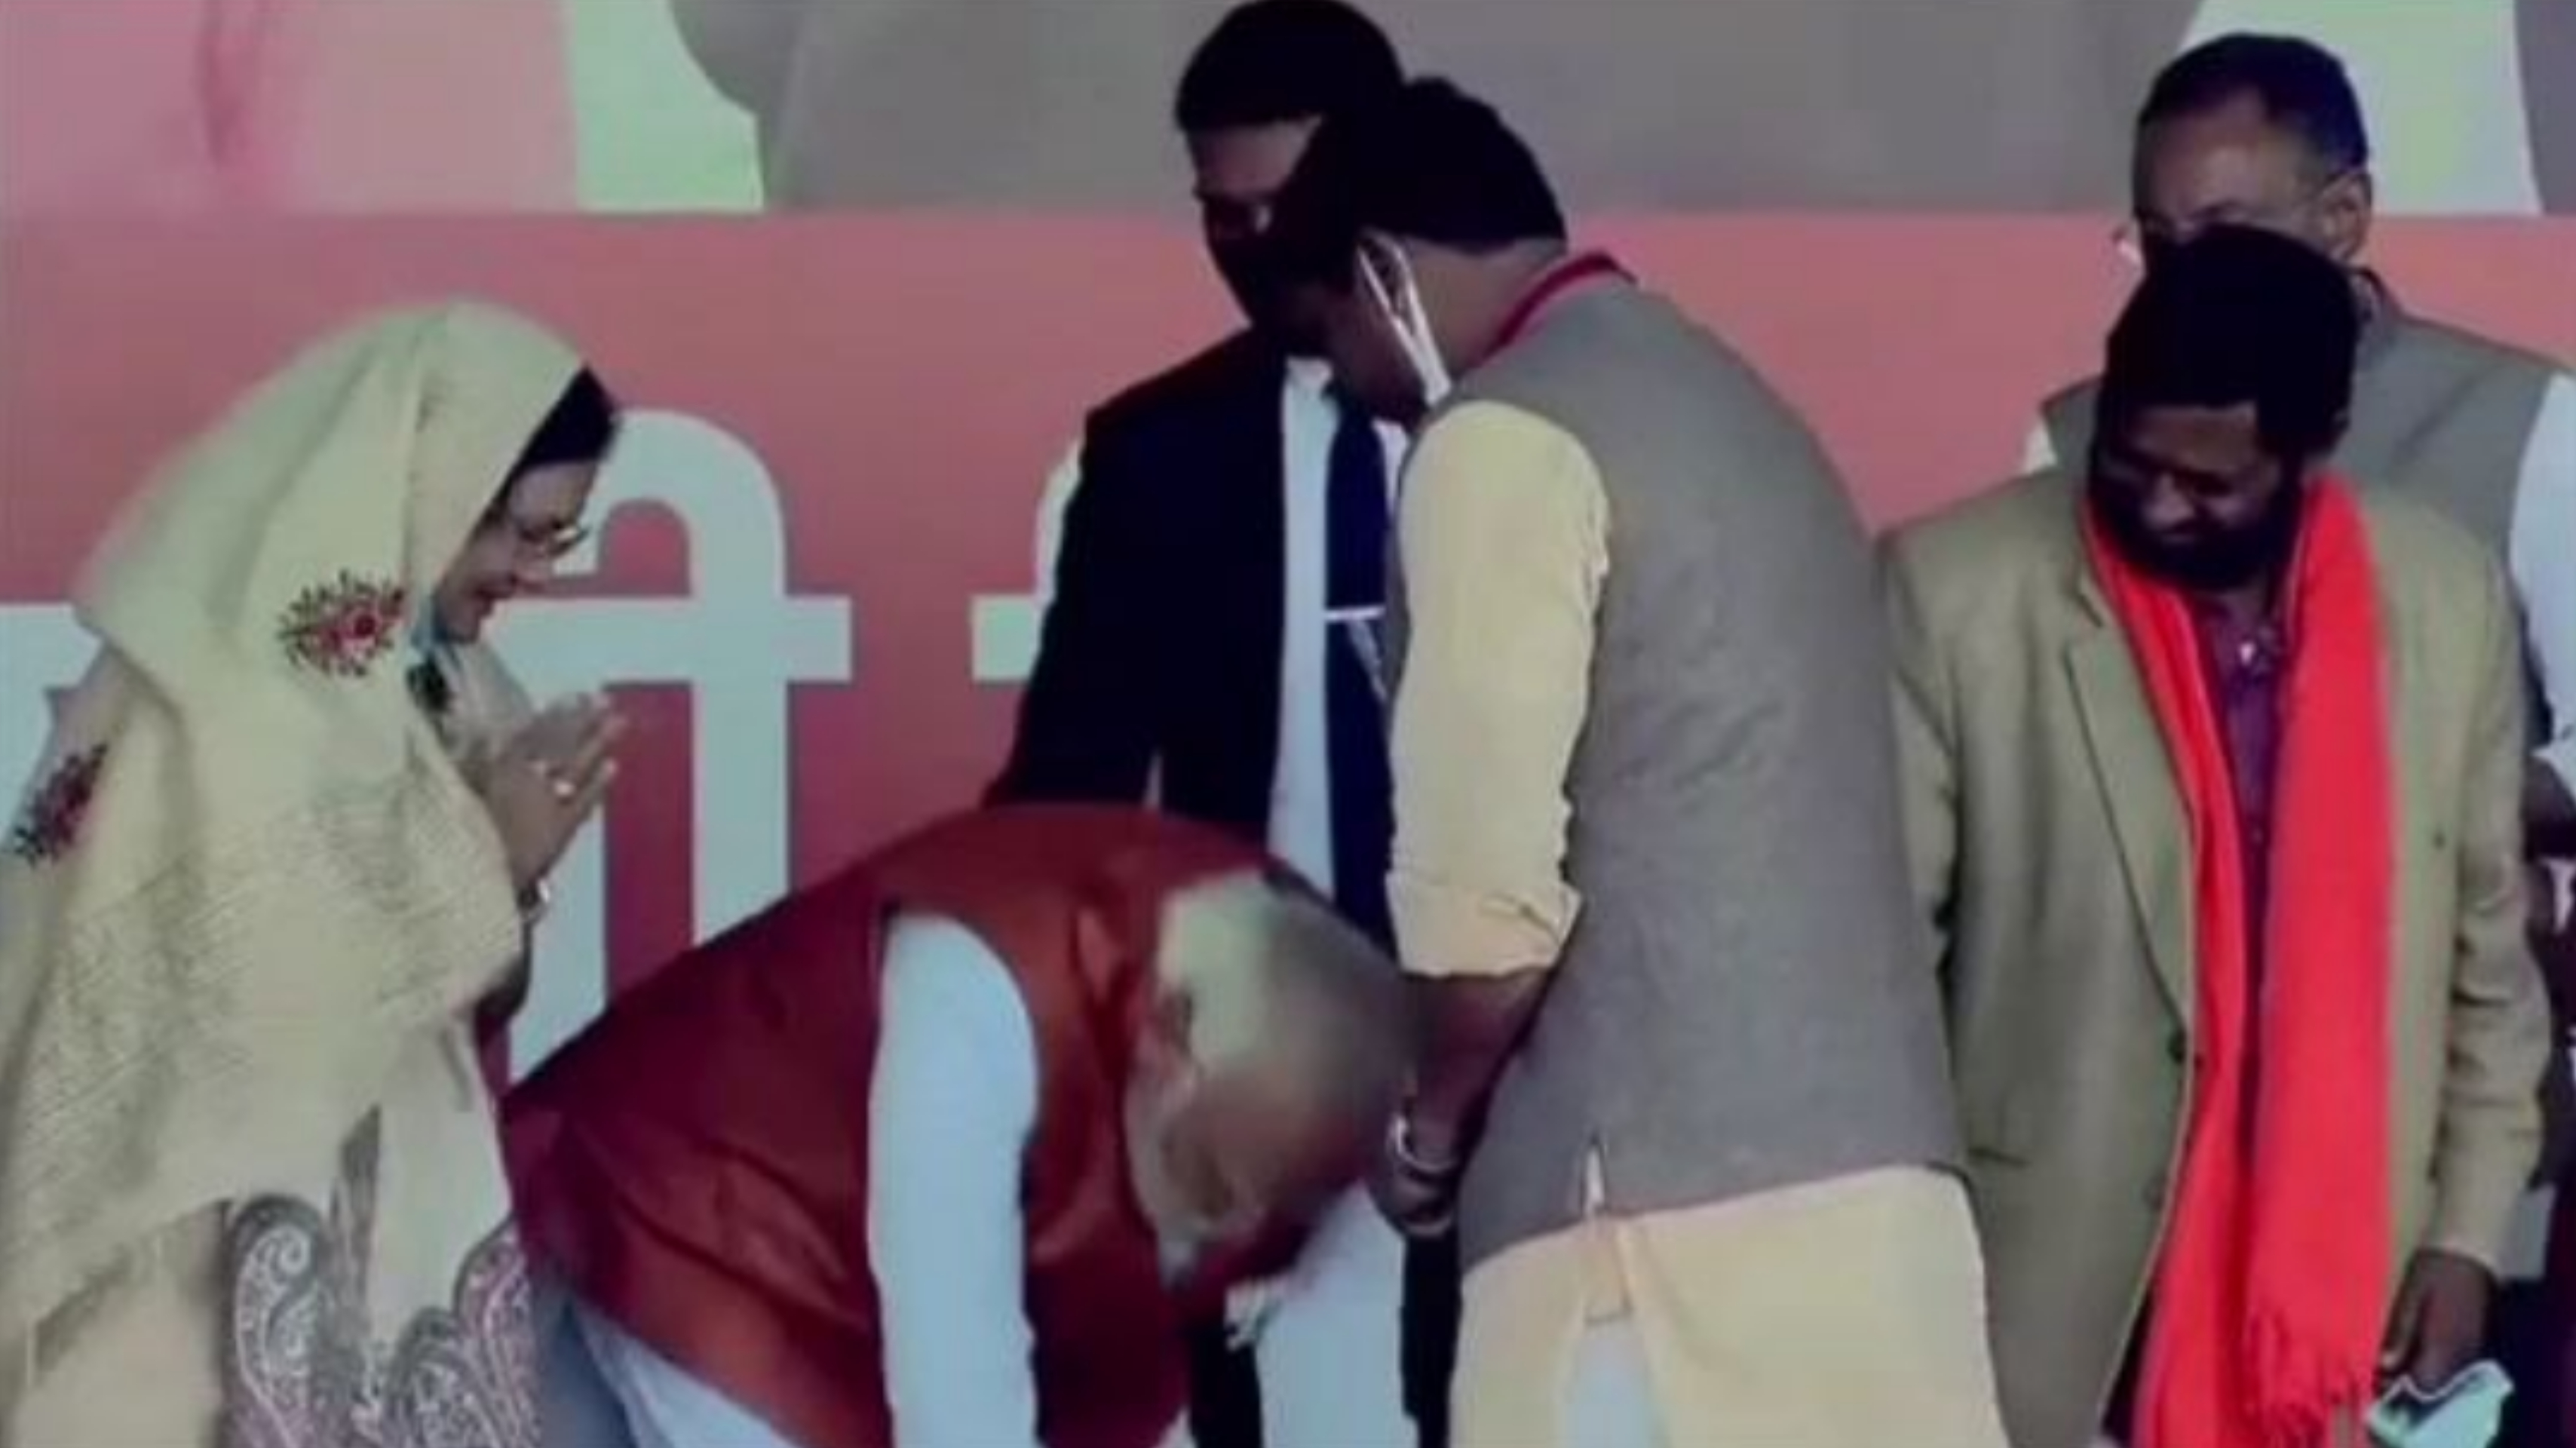 प्रधानमंत्री नरेंद्र मोदी ने जिलाध्यक्ष को पैर छूने को मना किया, बोले कार्यकर्ता ऐसा नहीं करता है